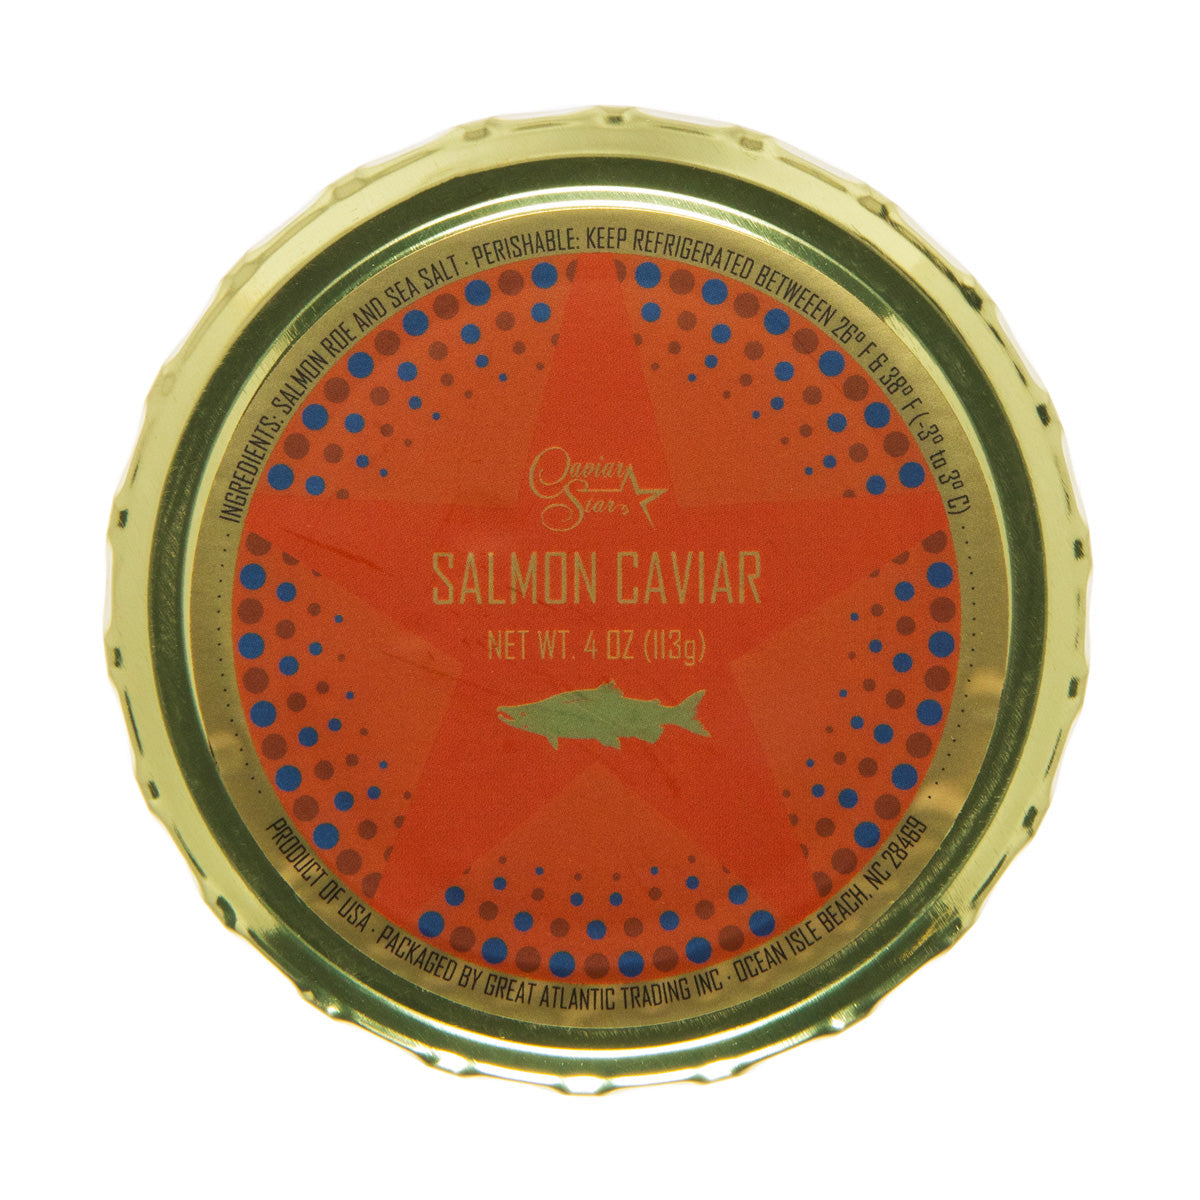 Caviar Star American Wild Salmon Roe